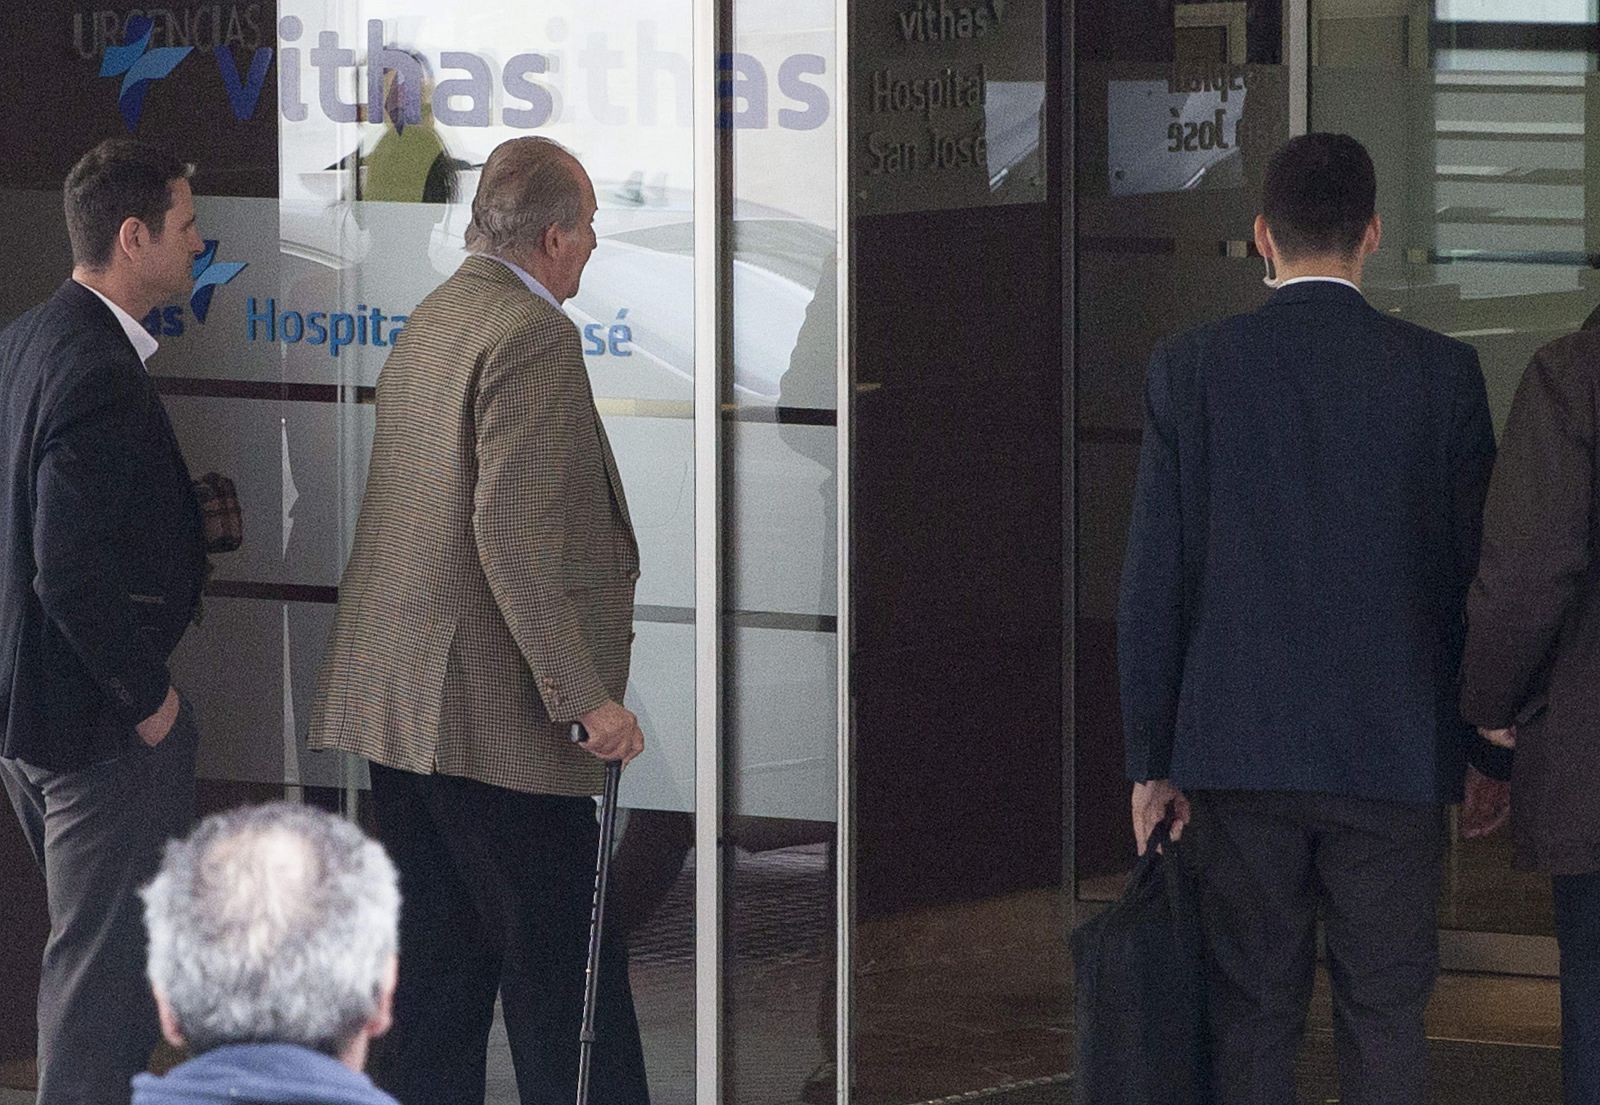 El rey Juan Carlos se somete a una revisión médica en Vitoria que revela su buen estado de salud